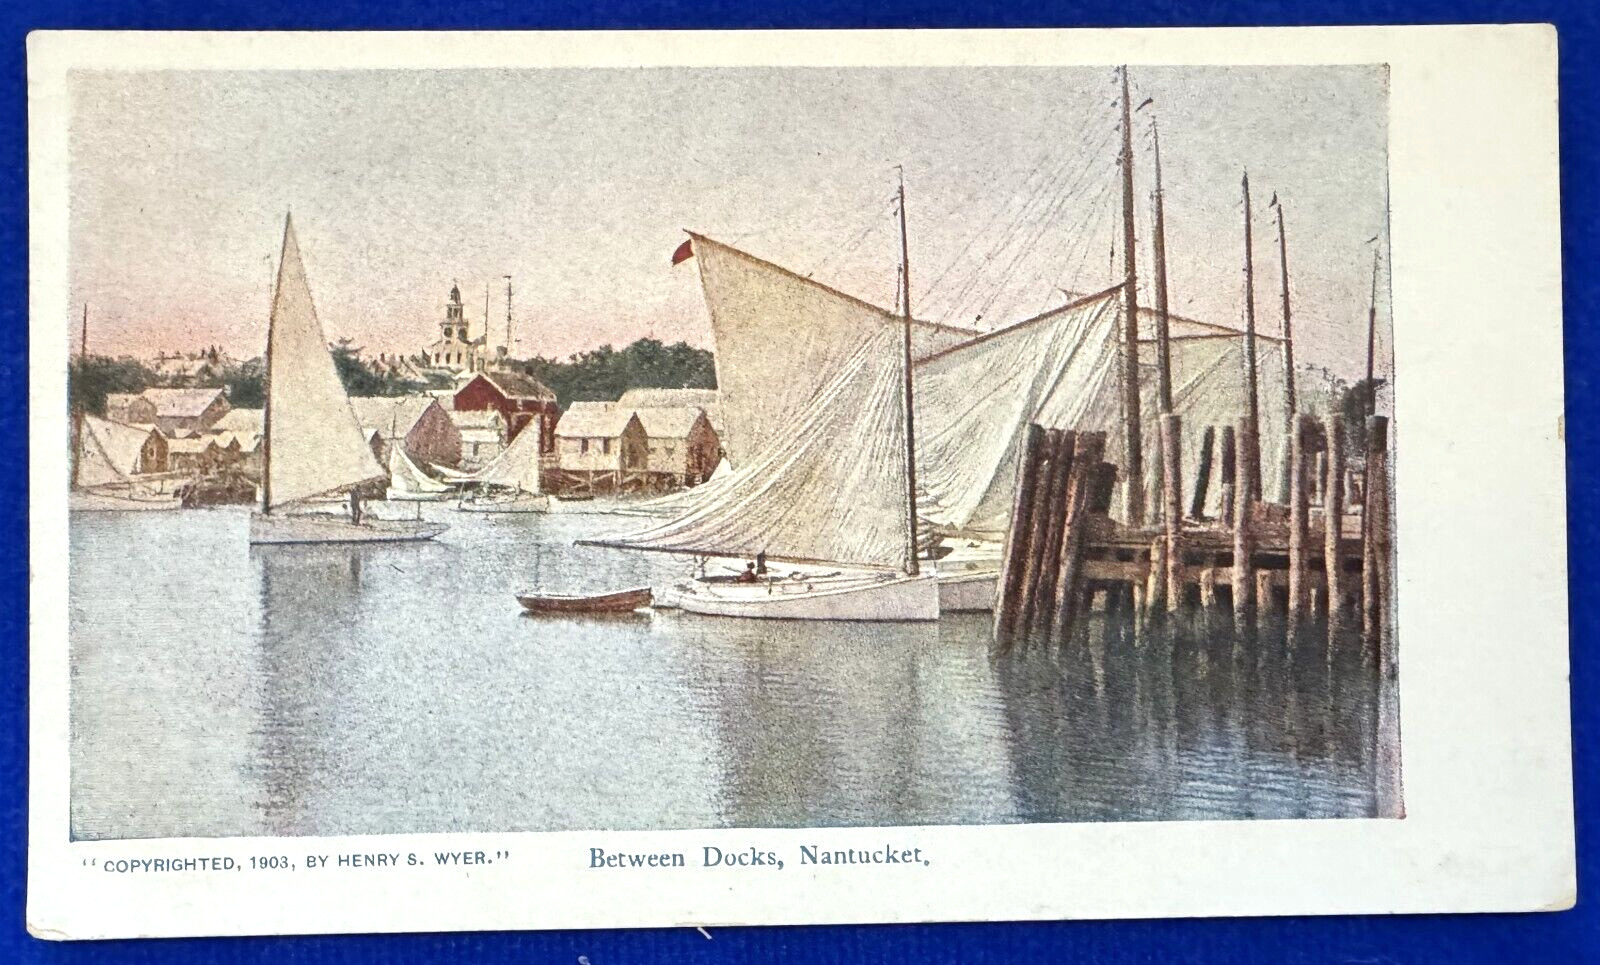 Antique 1903 Henry S. Wyer Between Docks, Nantucket Massachusetts Postcard